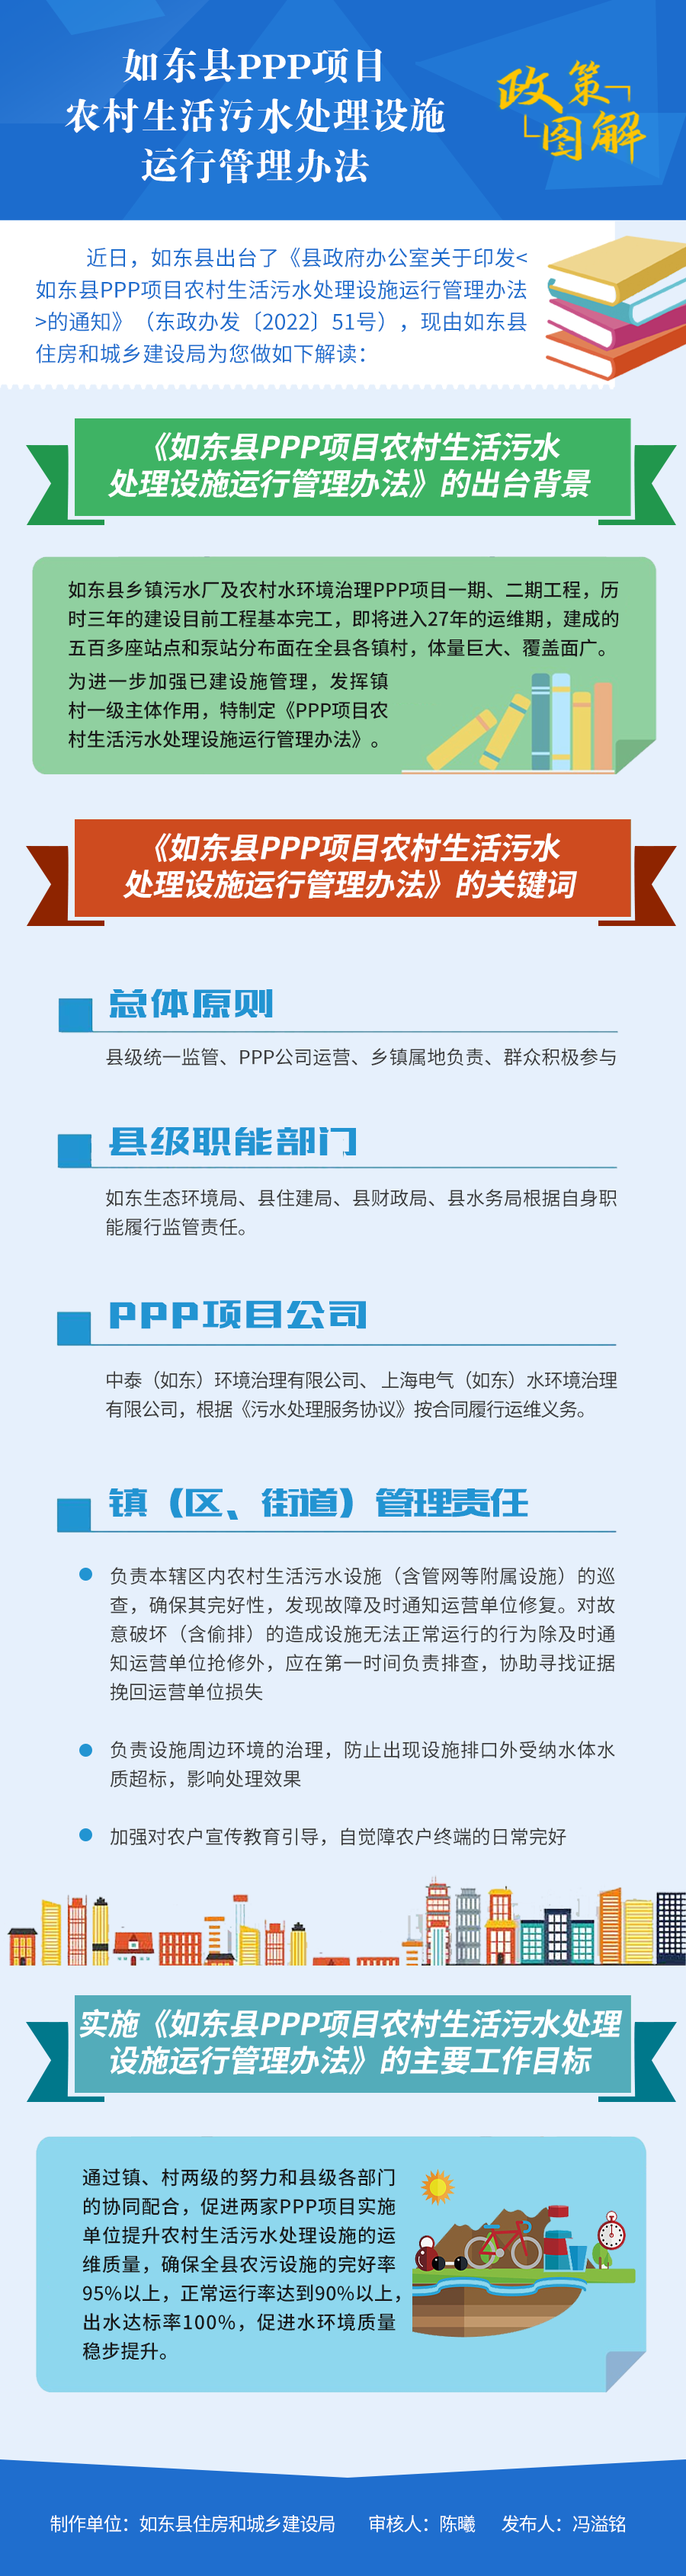 如东县PPP项目农村生活污水处理设施运行管理办法 新.png